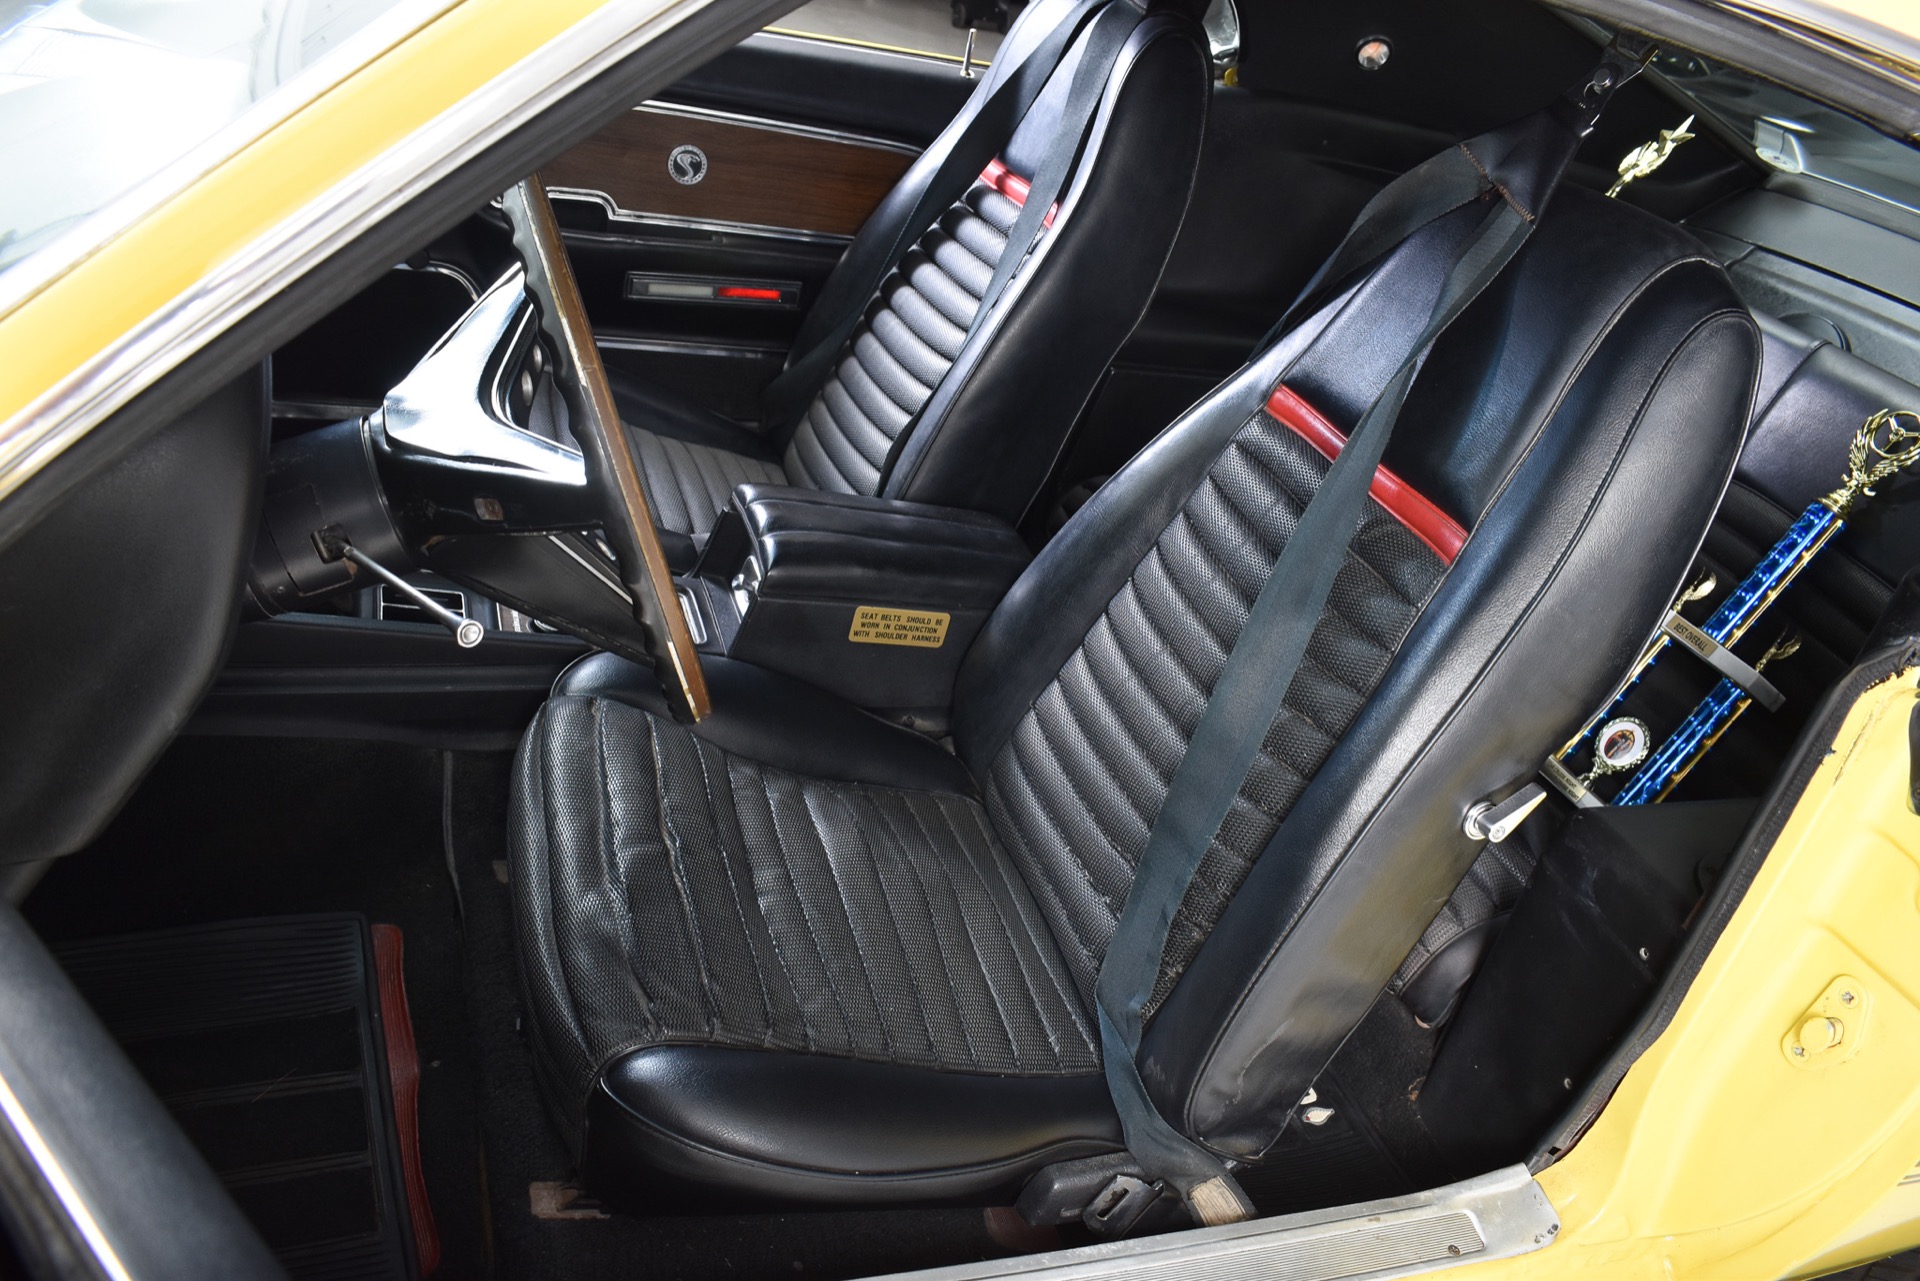 69 Mach 1 Shelby Sportsitze Sitzbezüge Vorne schwarz mit roten Streifen